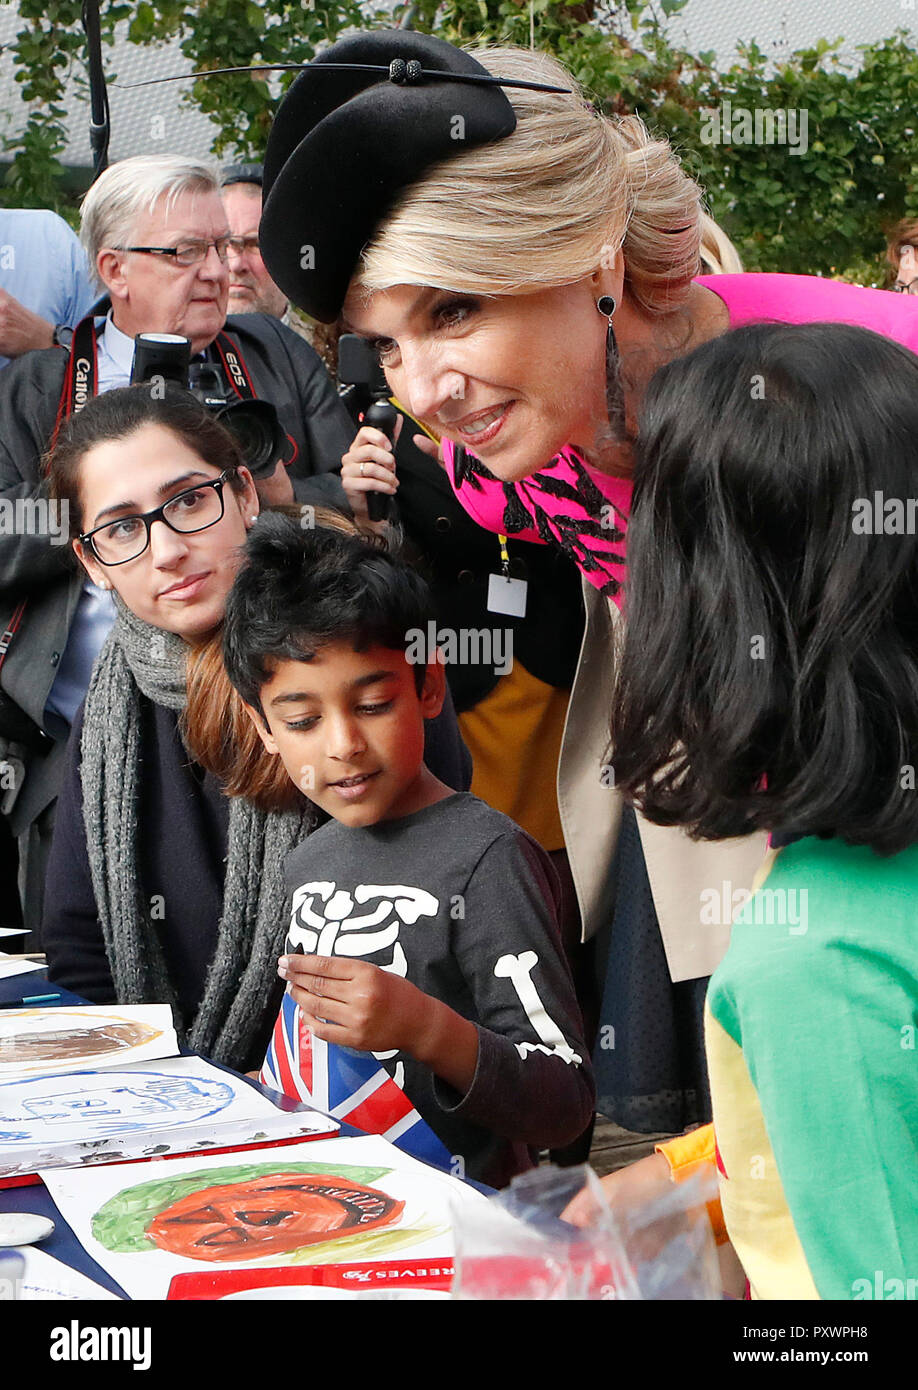 Regina Maxima dei Paesi Bassi parla ai figli come lei visiti il Pop Brixton a Londra come parte della sua visita di Stato nel Regno Unito. Foto Stock